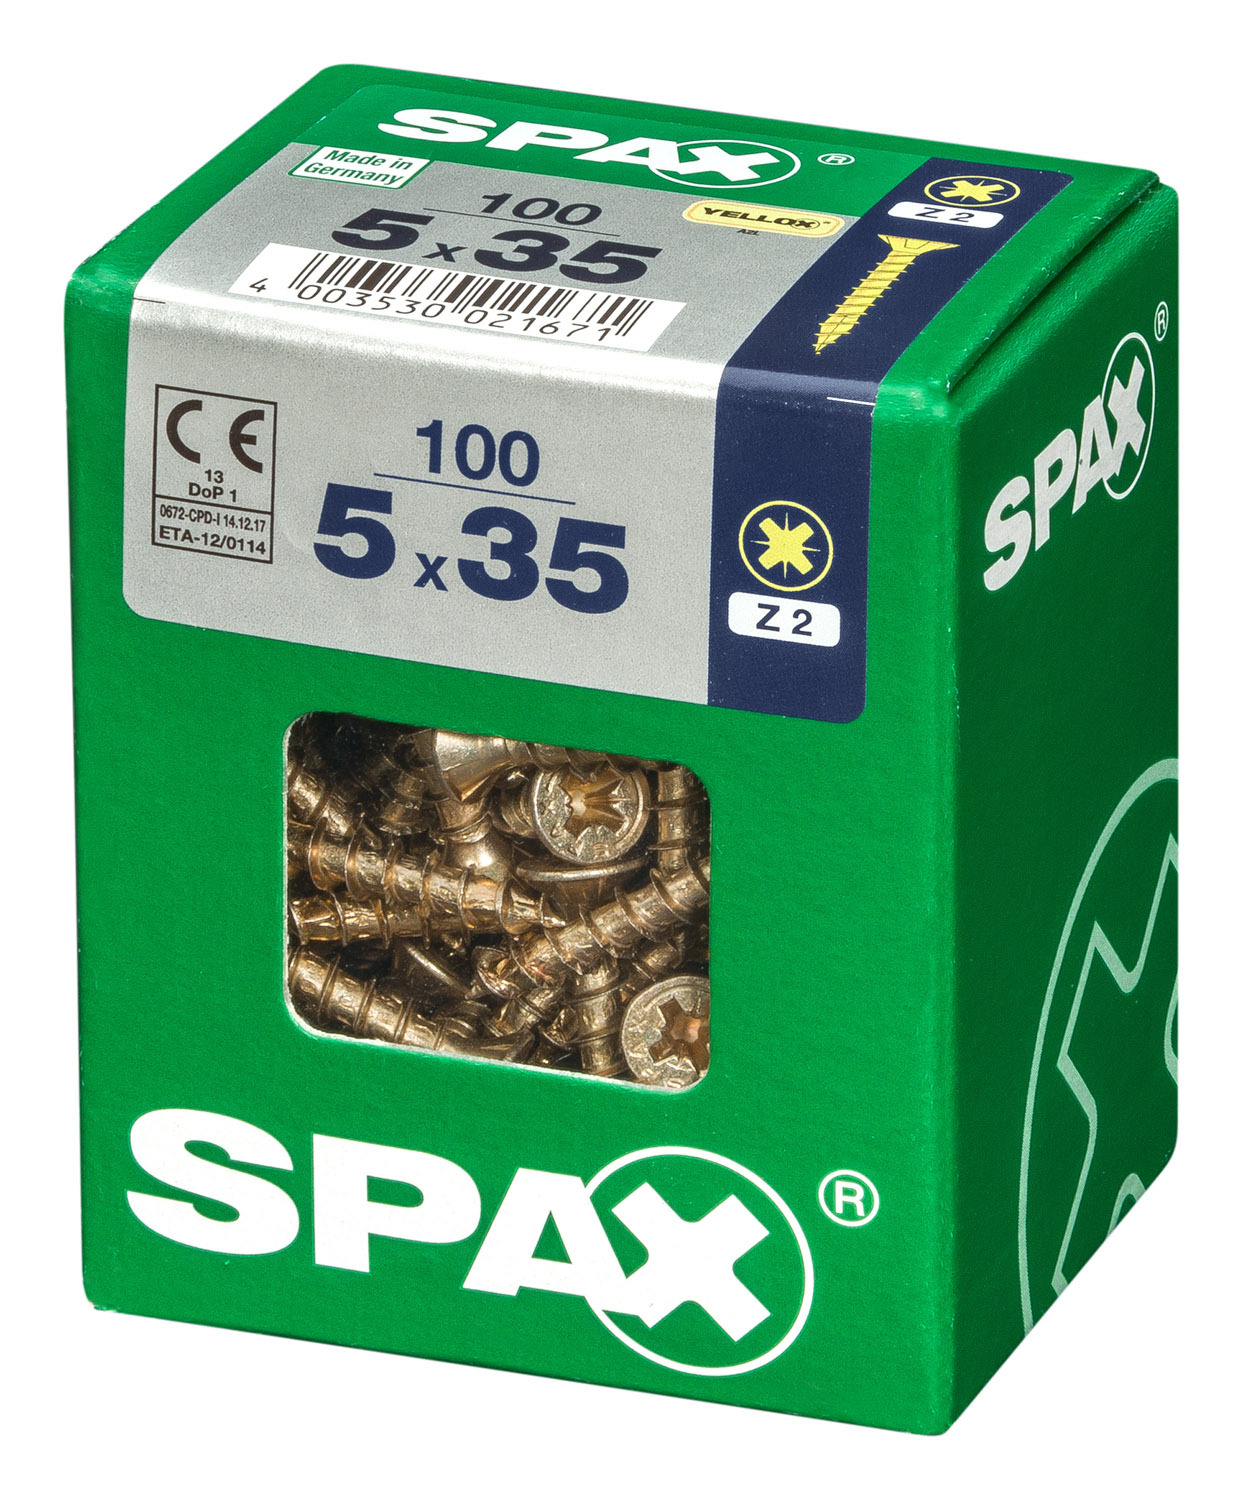 SPAX INTERNATIONAL GMBH & CO. KG - ENNEP Universalschrauben gelb vz VG 5,0x35 mm SeKo Pozi Pack L (100 Stück)